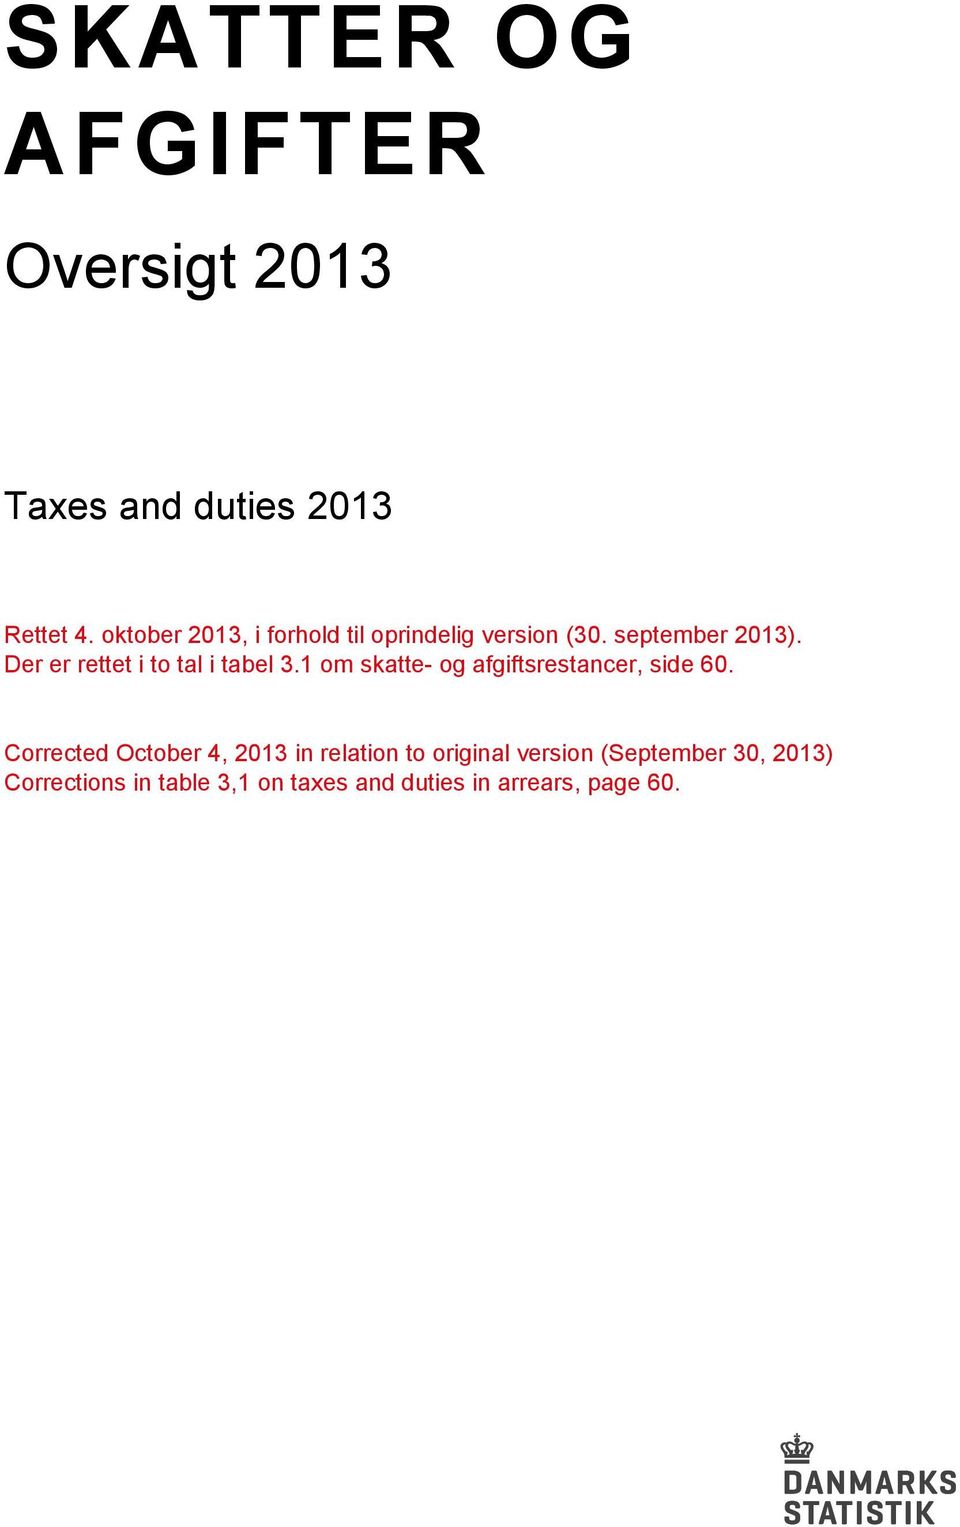 Der er rettet i to tal i tabel 3.1 om skatte- og afgiftsrestancer, side 60.